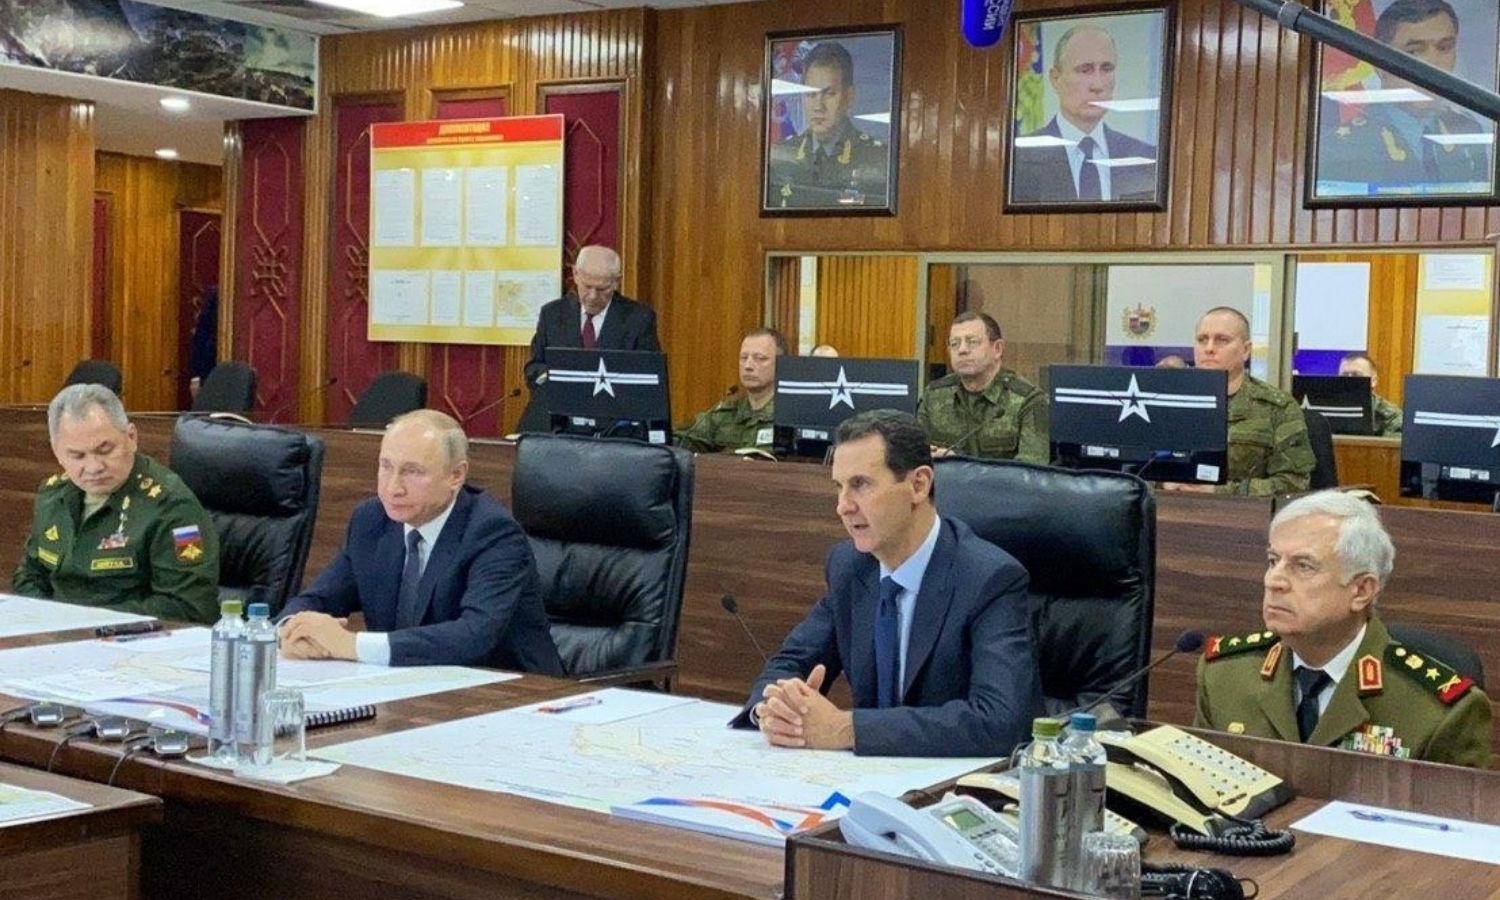 الرئيس الروسي فلاديمير بوتين في زيارة التقى خلالها الأسد في مقر تجميع القوات الروسية في دمشق - 7 كانون الثاني 2020 (رئاسة الجمهورية)